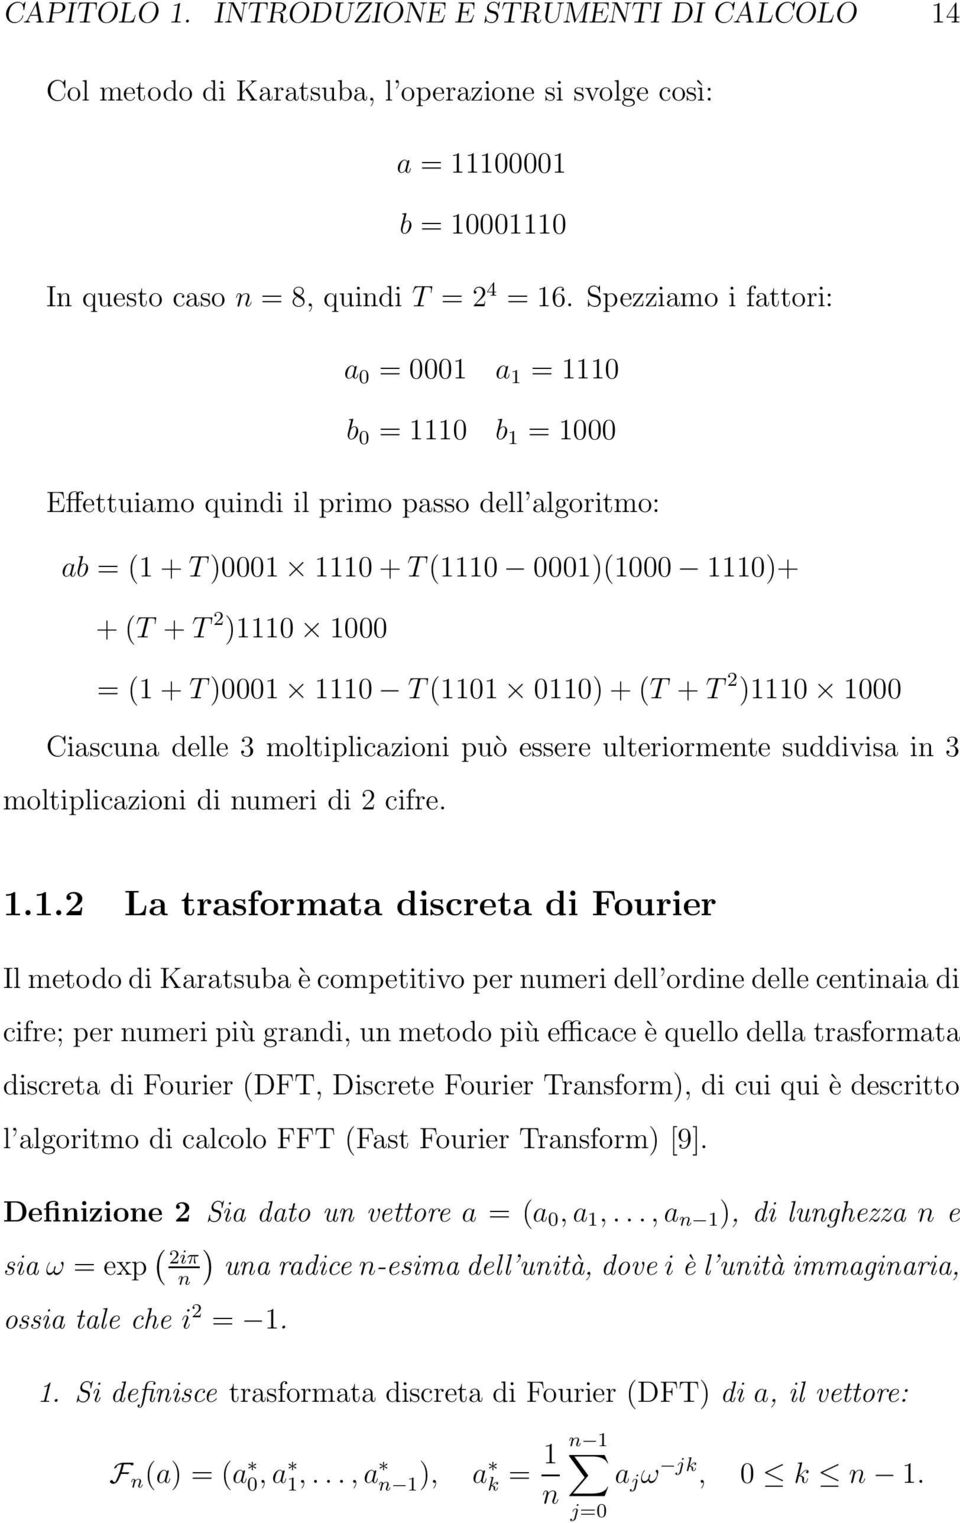 1110 T(1101 0110) + (T + T 2 )1110 1000 Ciascuna delle 3 moltiplicazioni può essere ulteriormente suddivisa in 3 moltiplicazioni di numeri di 2 cifre. 1.1.2 La trasformata discreta di Fourier Il